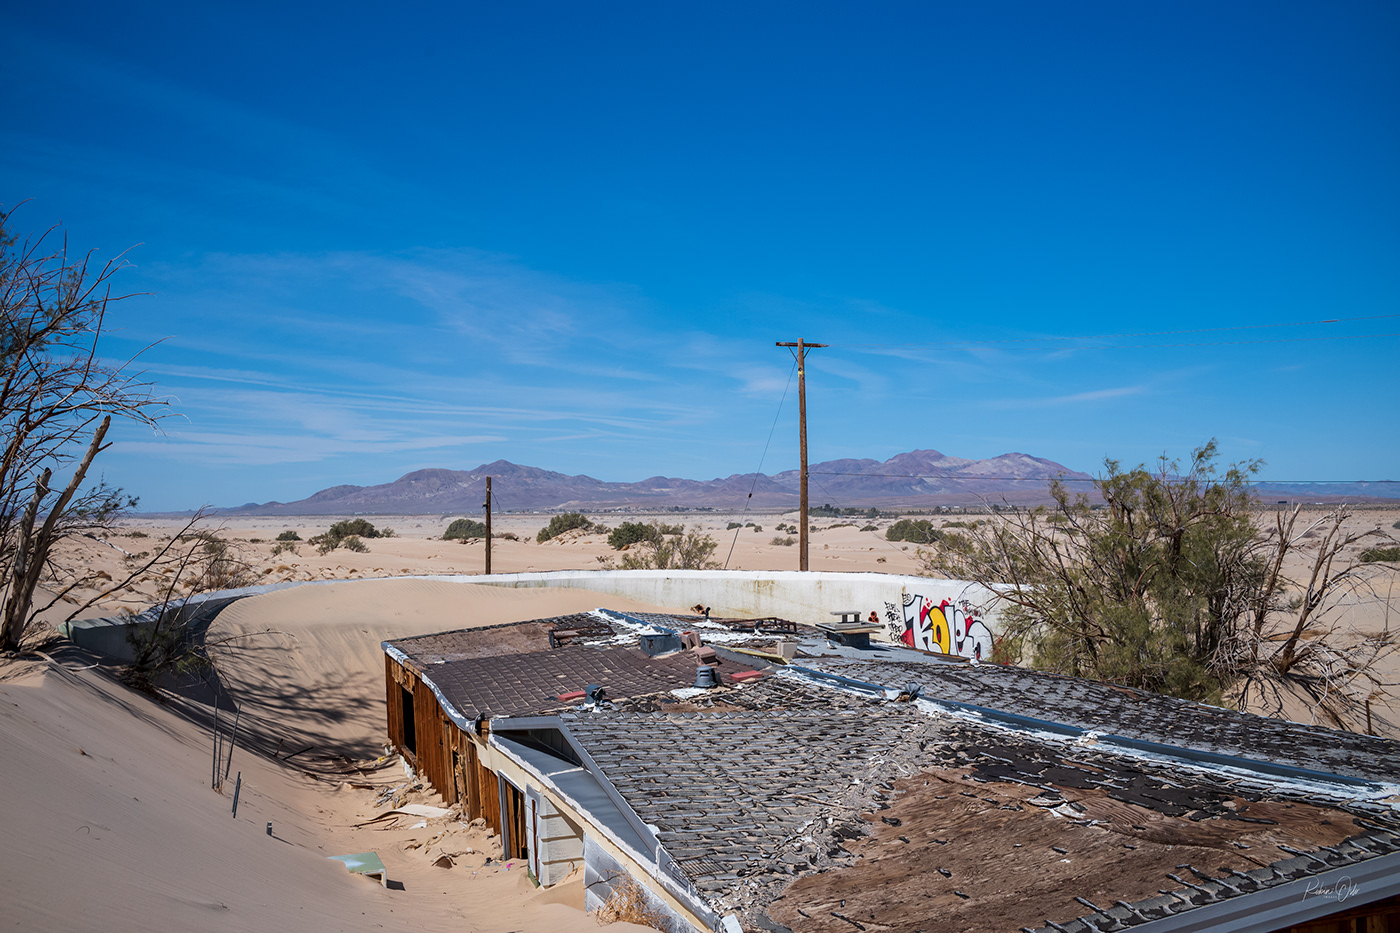 California desert houses infrared Landscape mojave Photography  sand